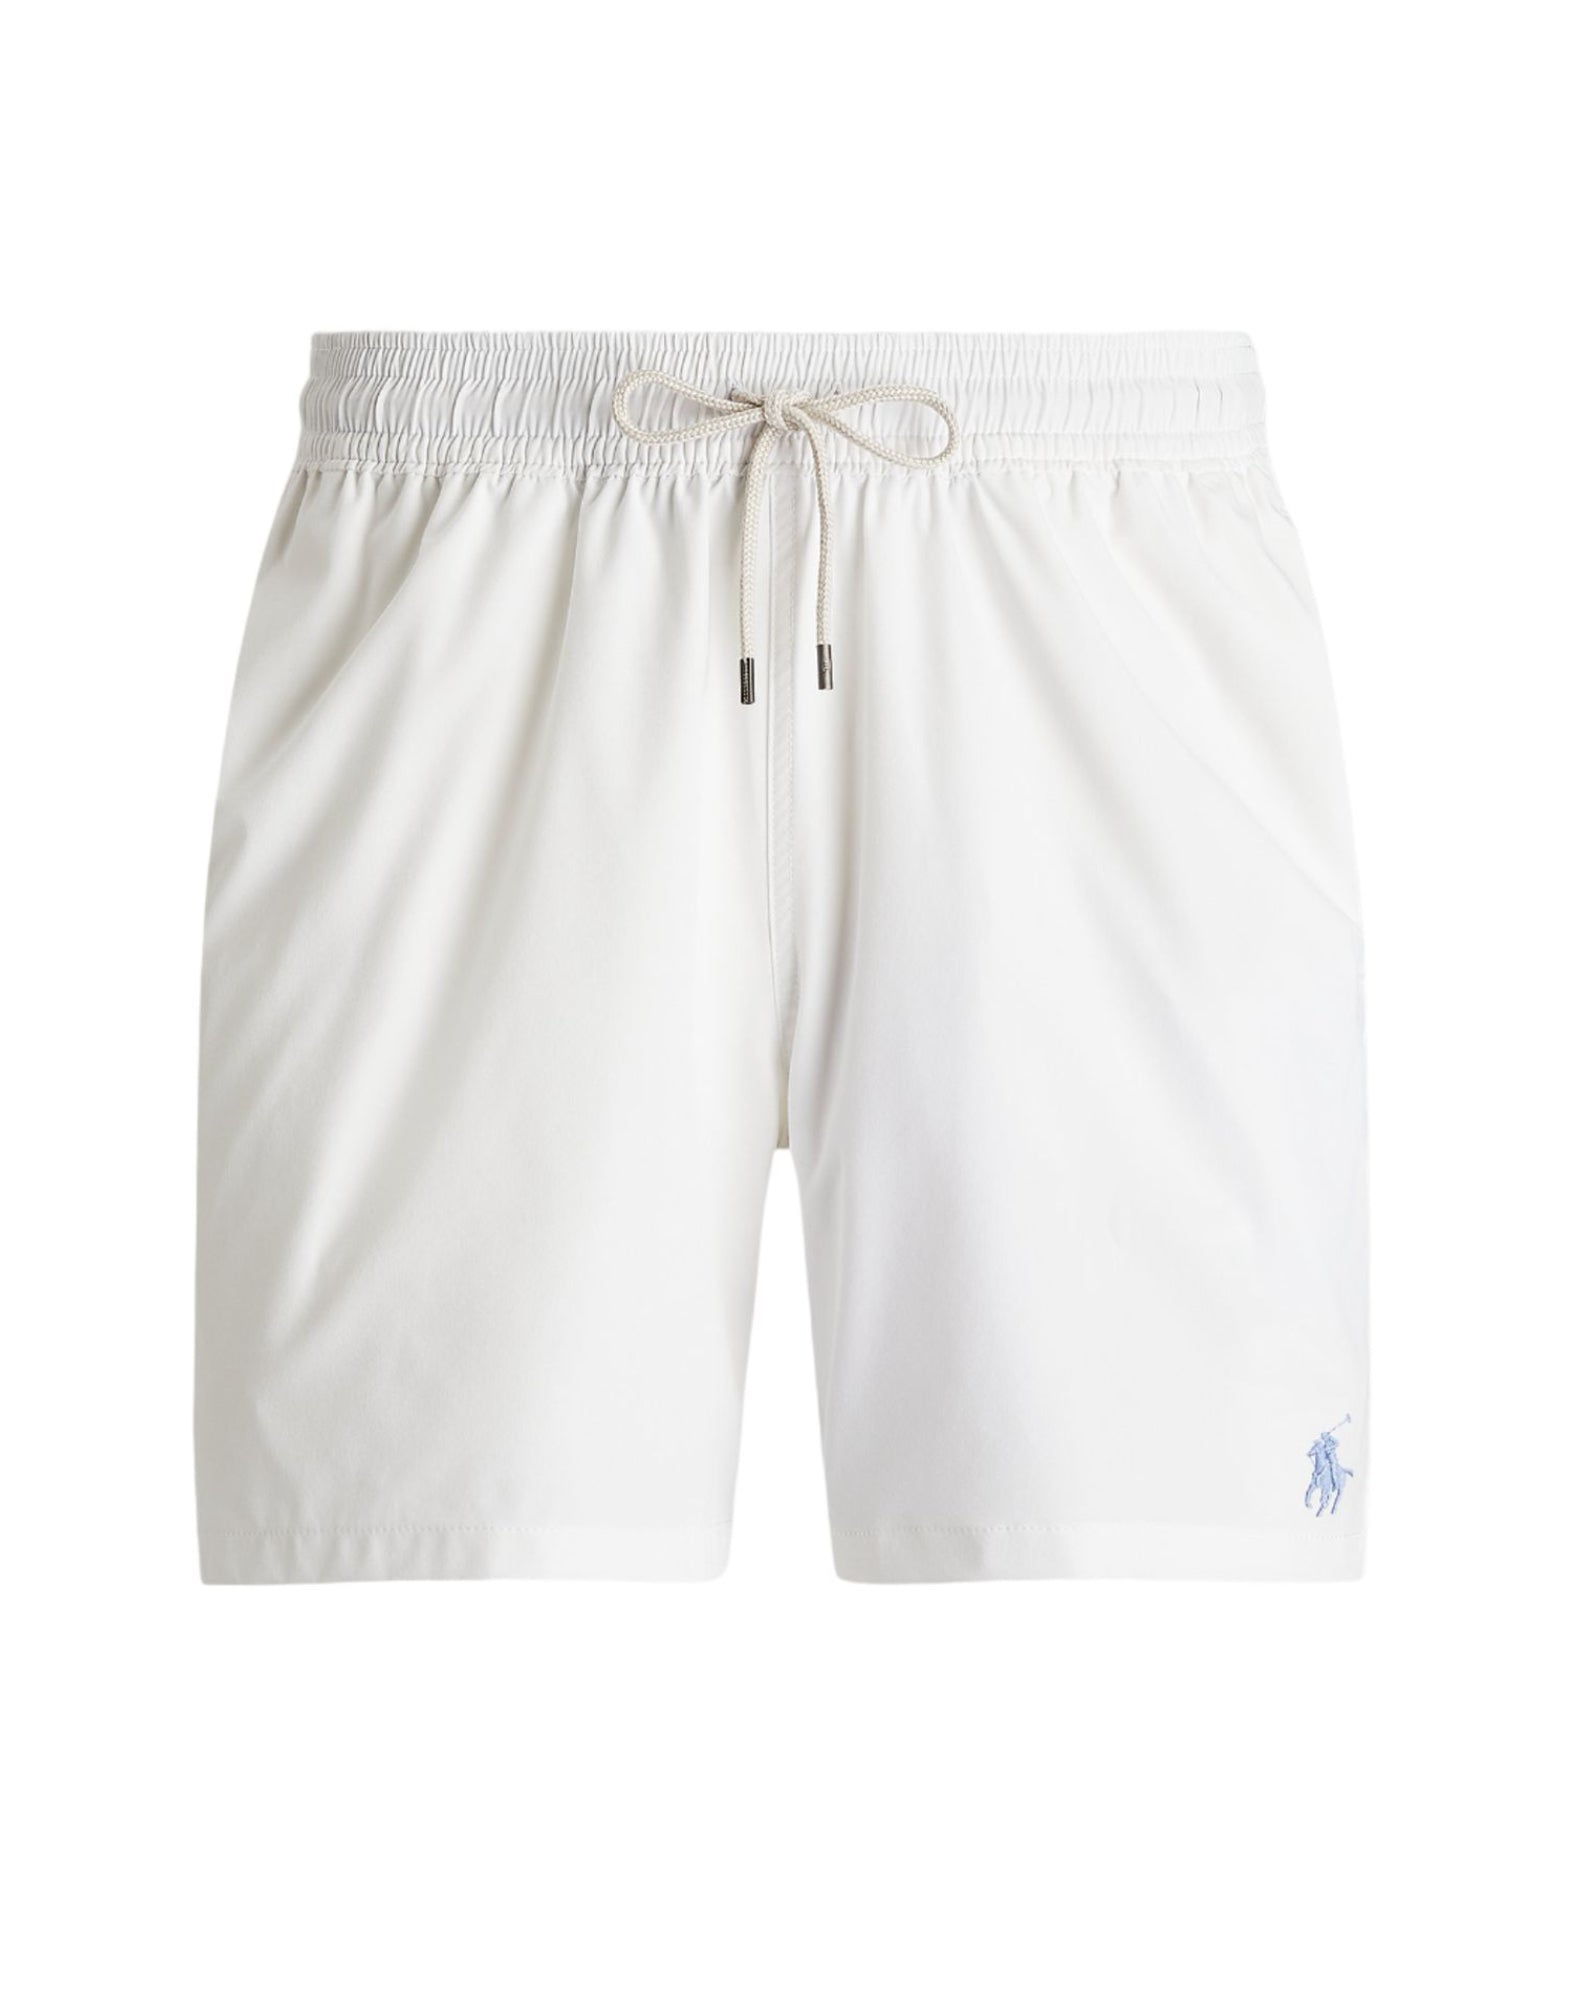 Swimwear for men 710901591004 WHITE Polo Ralph Lauren